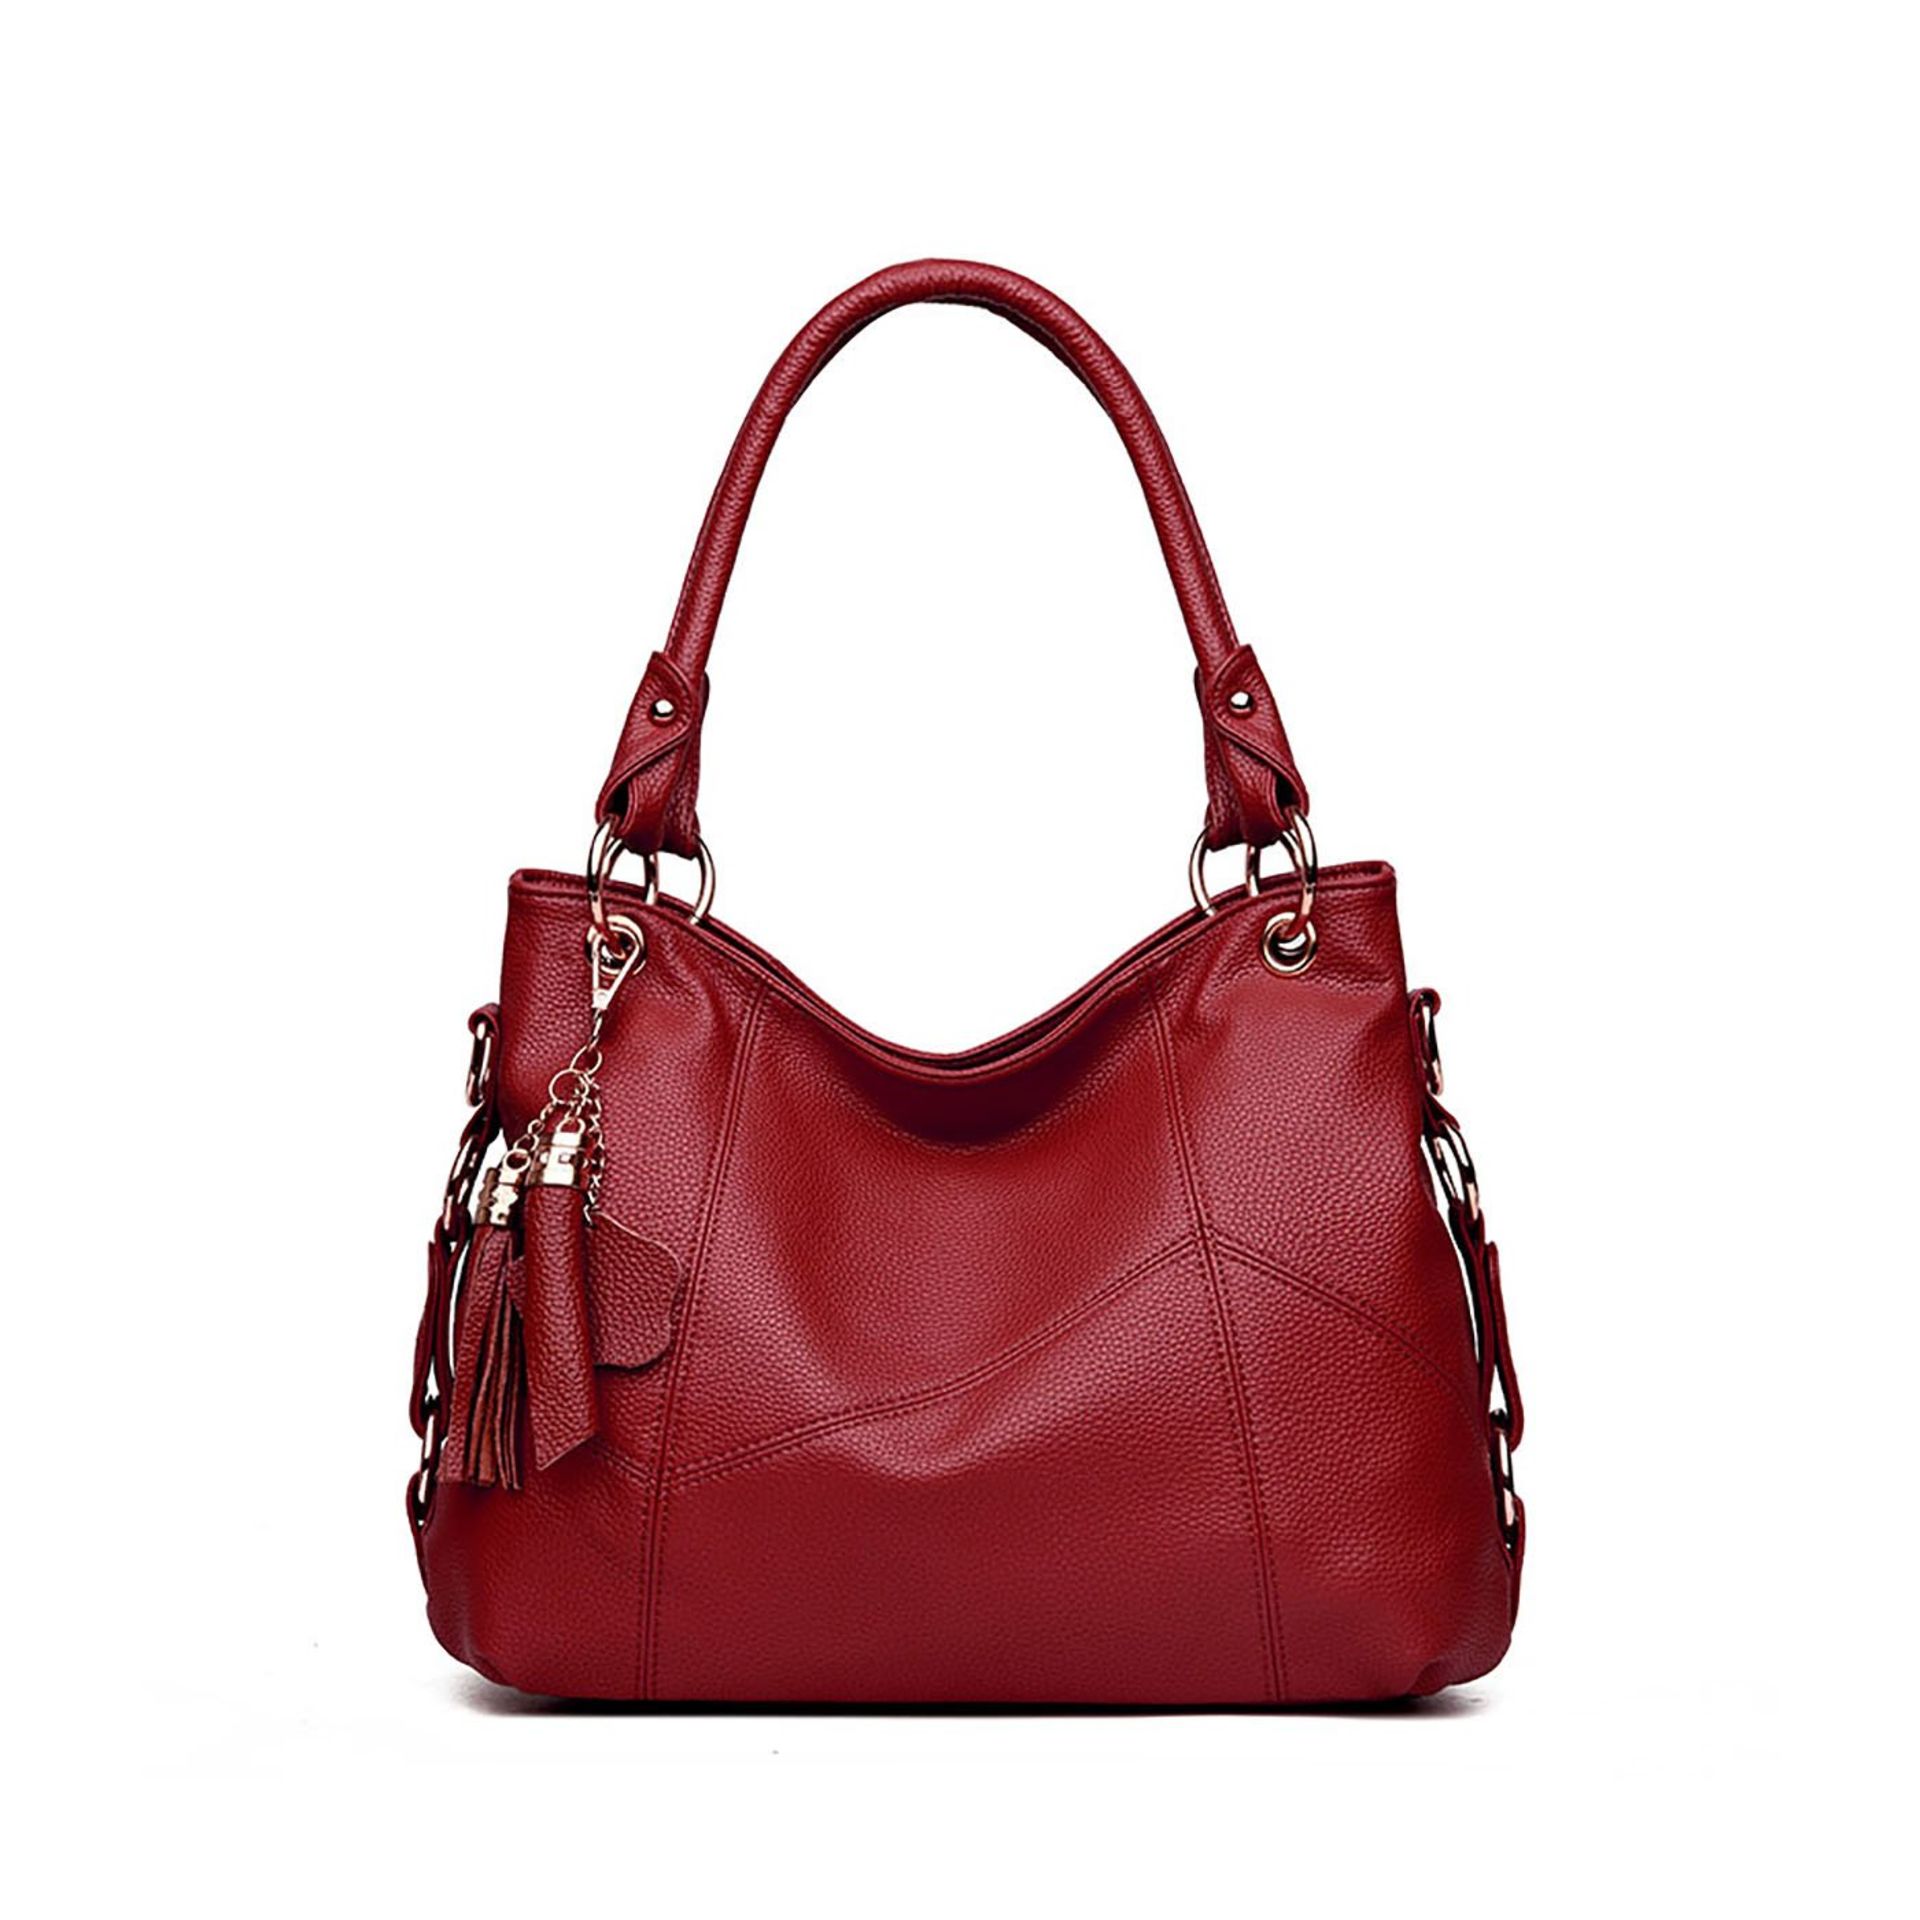 Brand New Women's Coolives Metal Ring Shoulder Strap Red Wine Handbag RRP £54.99